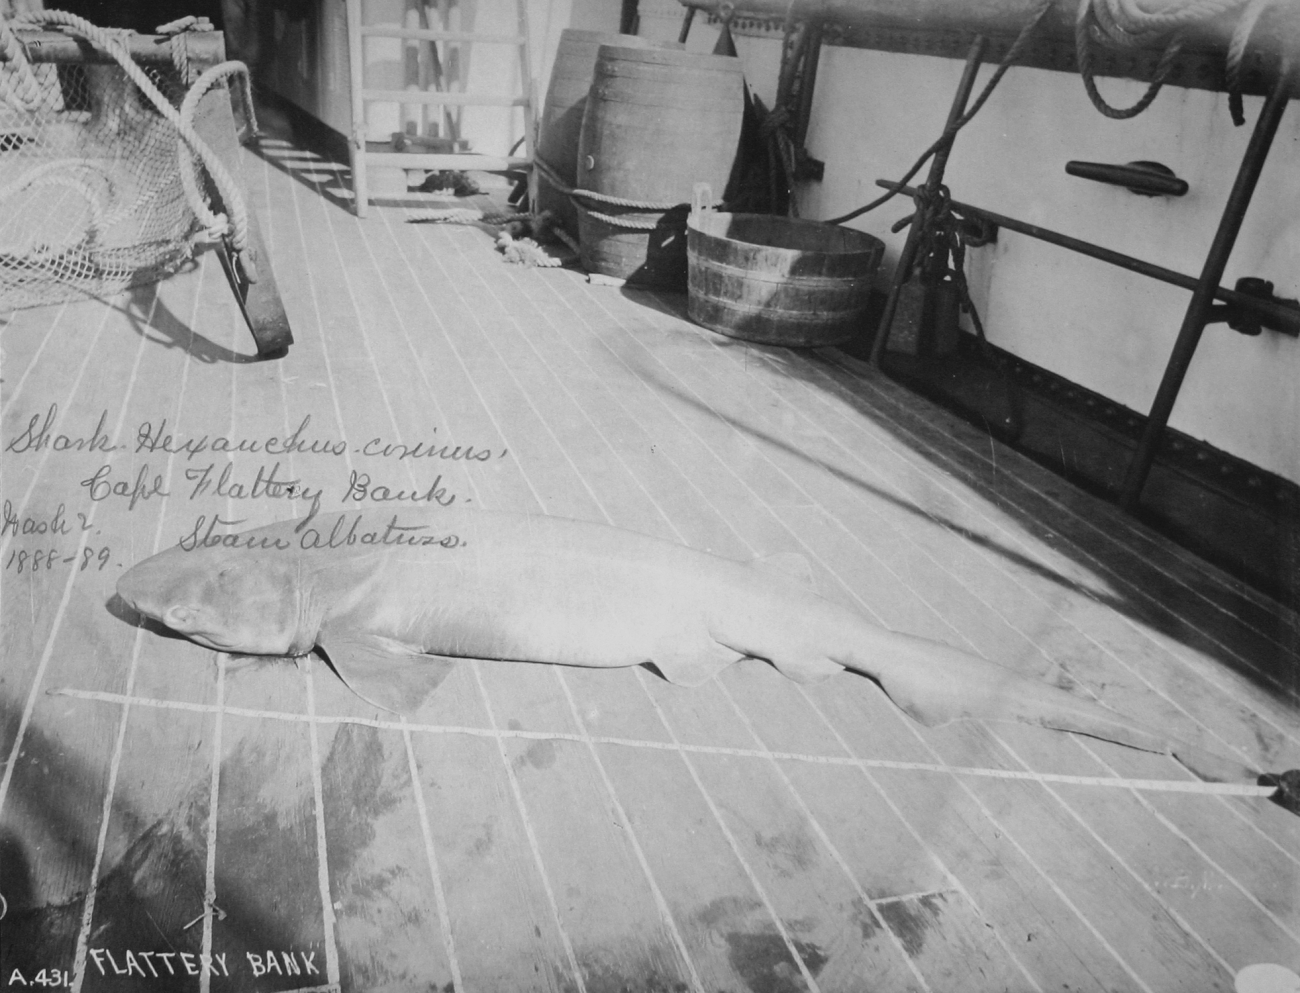 Shark, hexanchus corinus, Cape Flattery Bank, WA, 1888-89, steamer Albatross